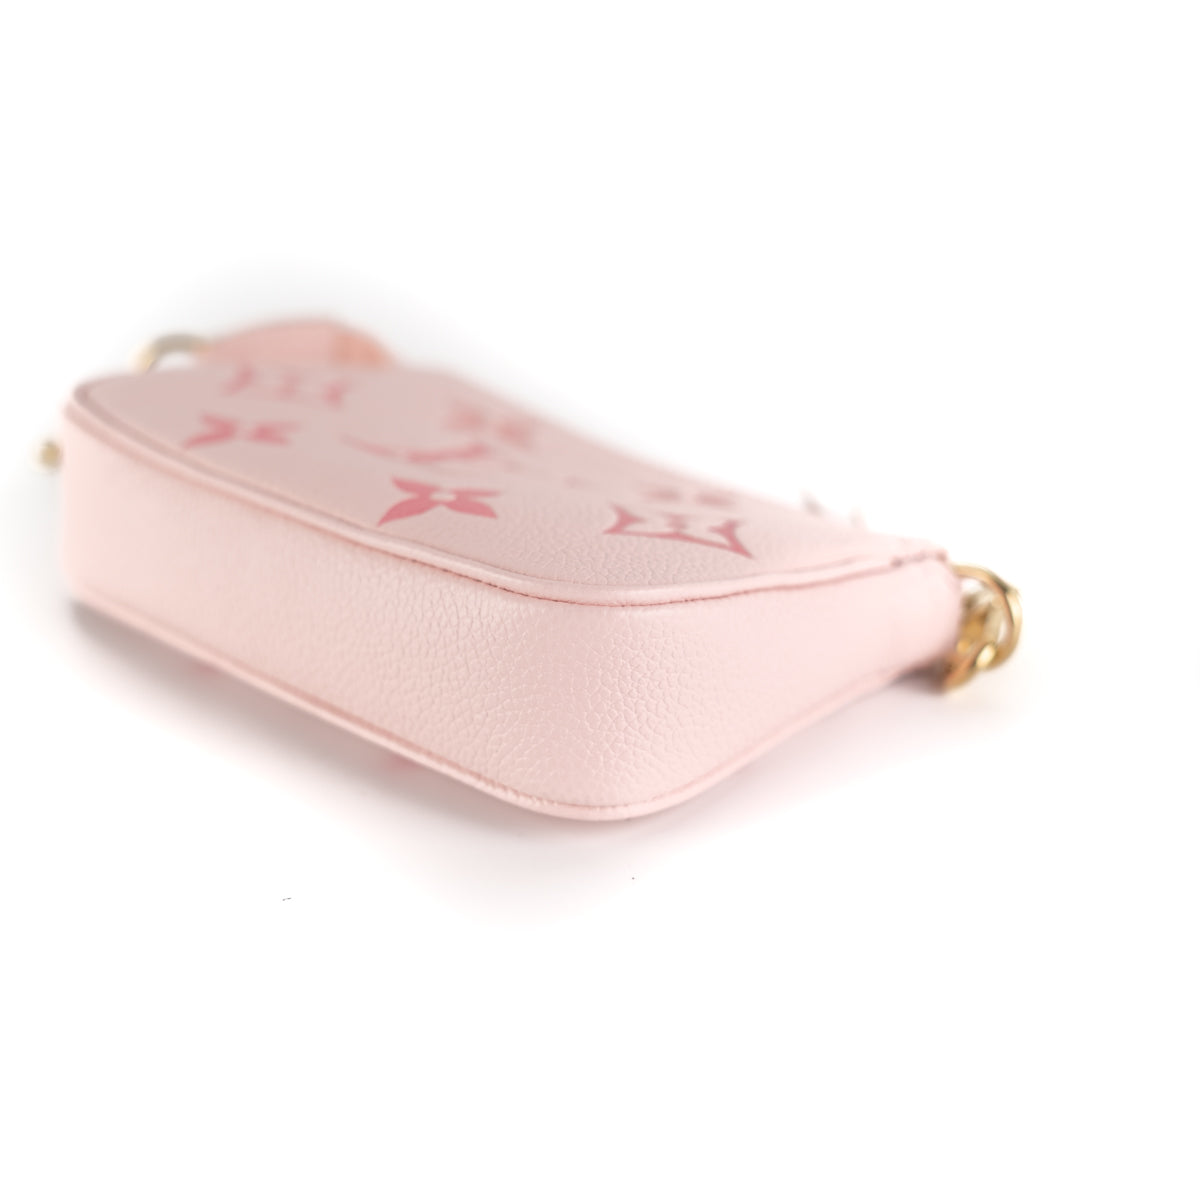 Louis vuitton pink key pouch by the pool｜TikTok Search